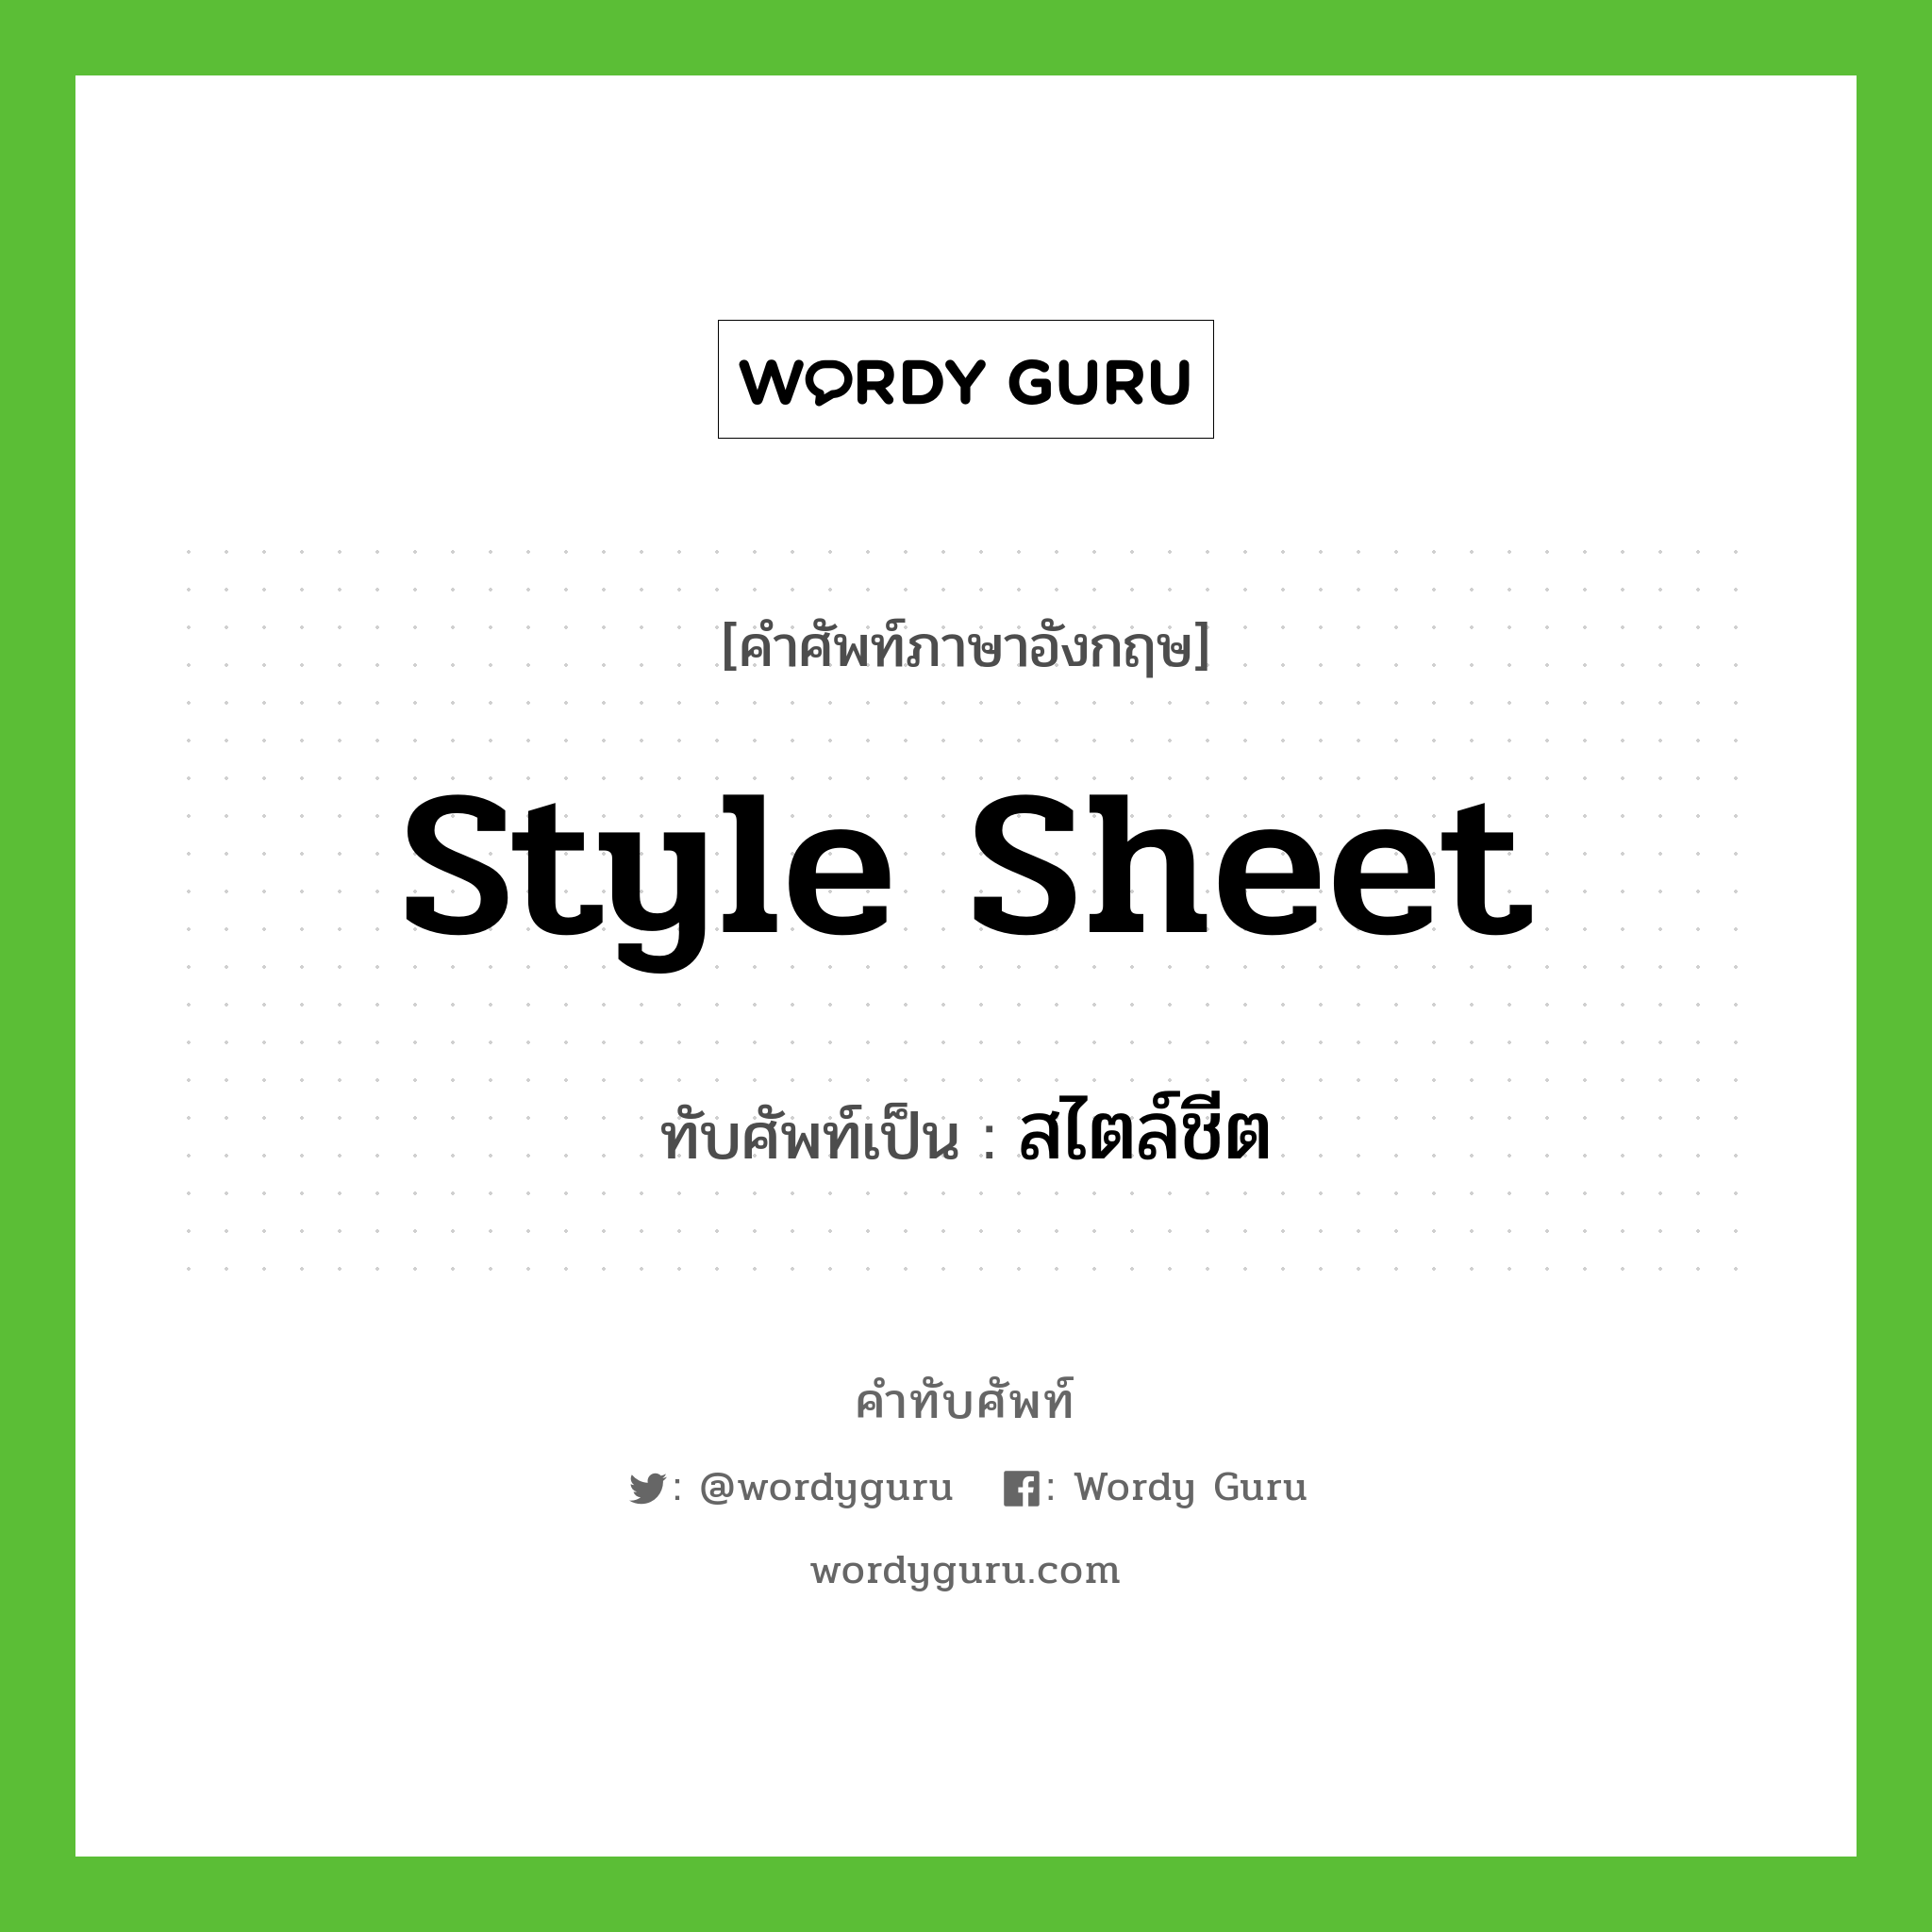 style sheet เขียนเป็นคำไทยว่าอะไร?, คำศัพท์ภาษาอังกฤษ style sheet ทับศัพท์เป็น สไตล์ชีต